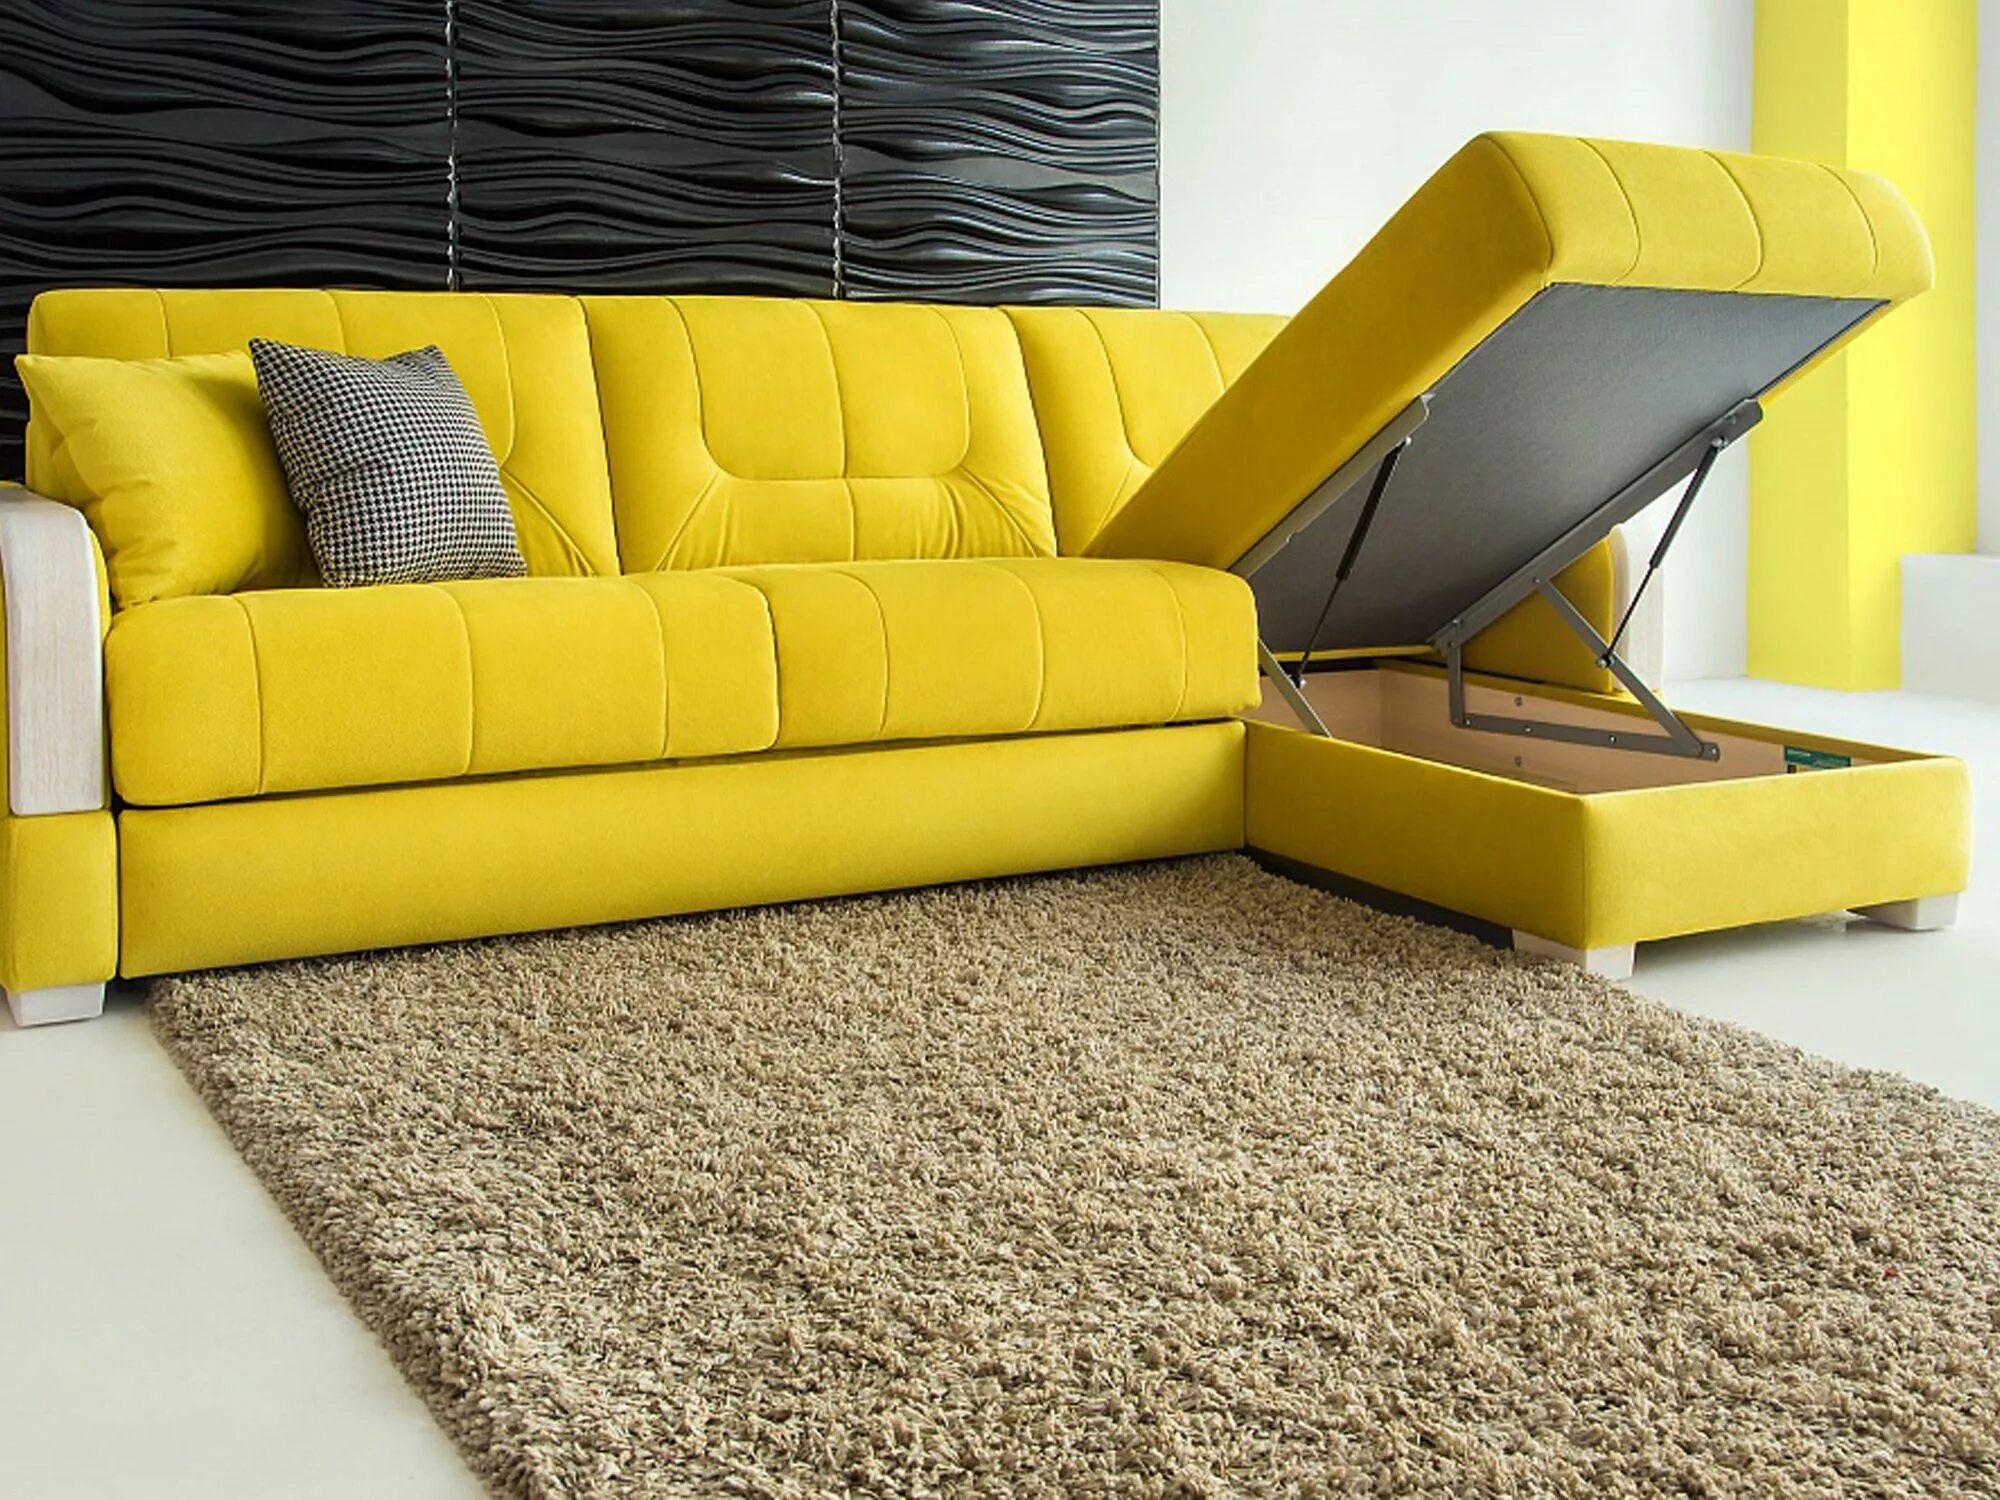 Купить диван. Диван. Желтый диван. Желтый угловой диван. Диван кровать.